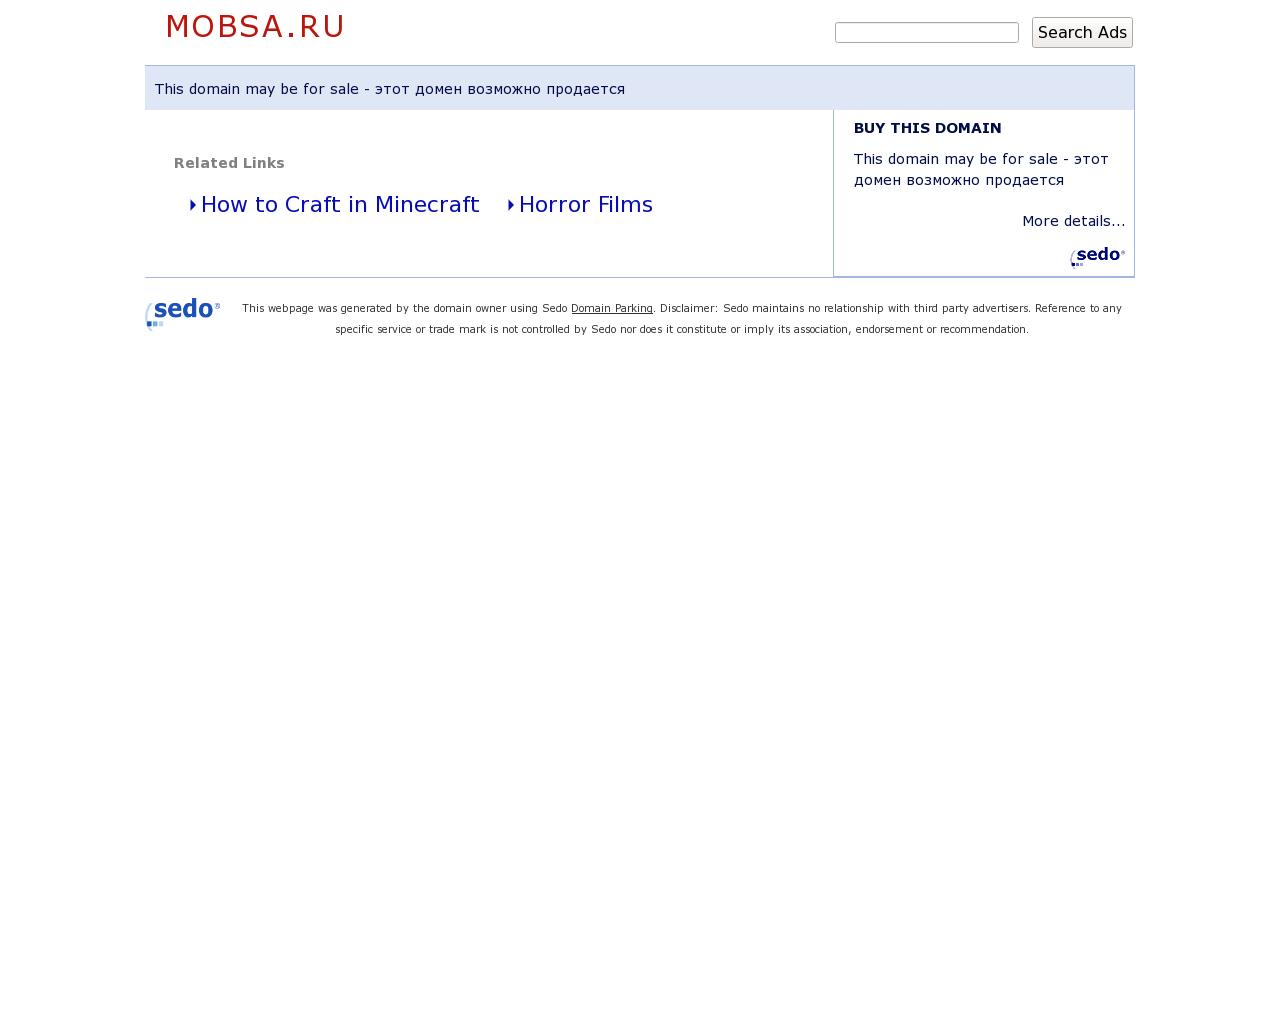 Изображение сайта mobsa.ru в разрешении 1280x1024